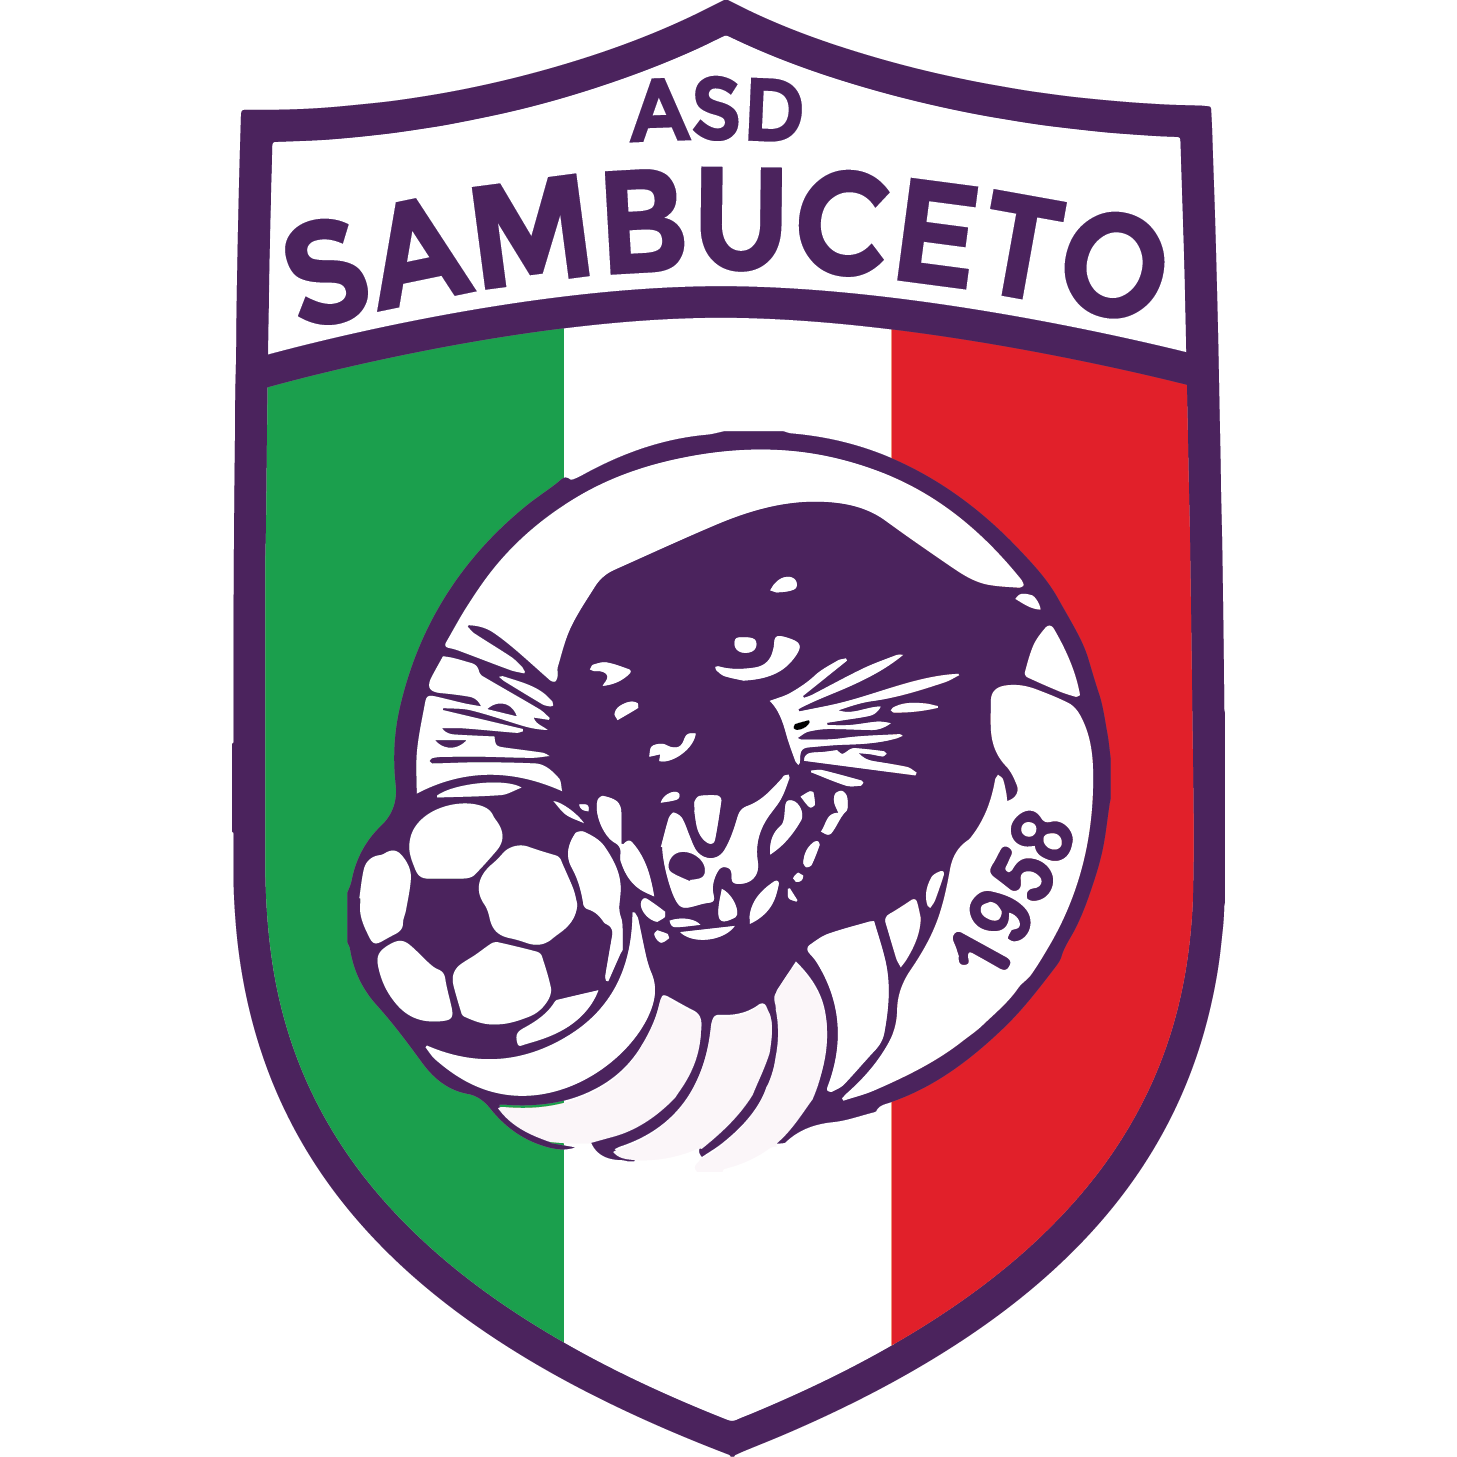 ASD Sambuceto Calcio